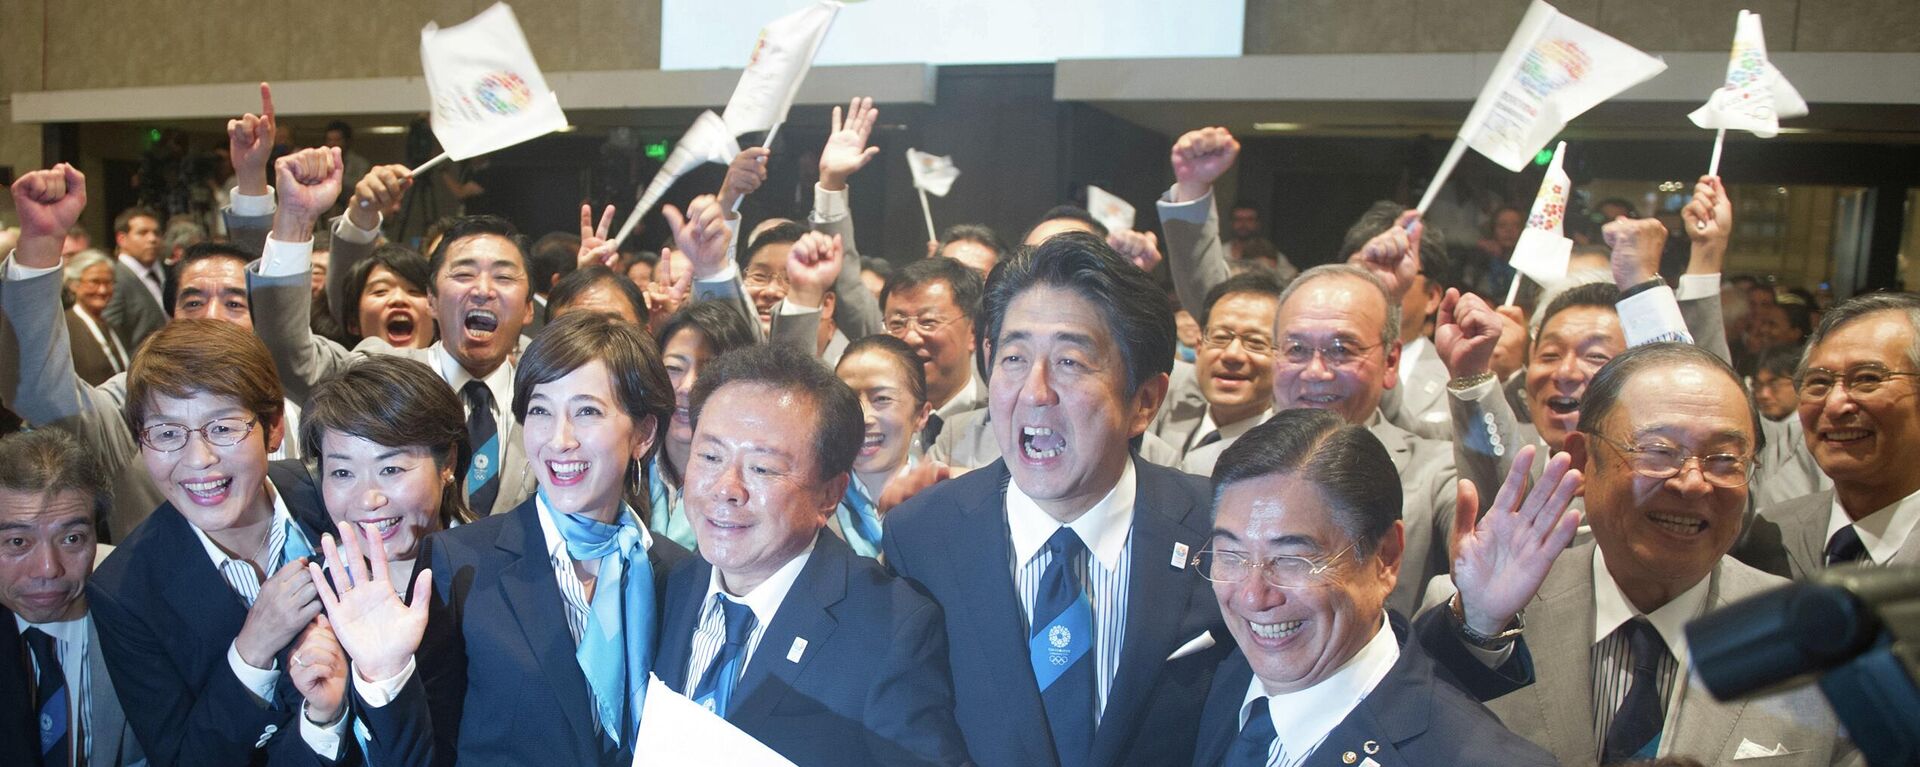 第125次IOC総会で2020年五輪開催都市が東京に決定し、日本代表団と喜びを表す安倍晋三元首相（アルゼンチン・ブエノスアイレス、2013年9月7日） - Sputnik 日本, 1920, 08.07.2022